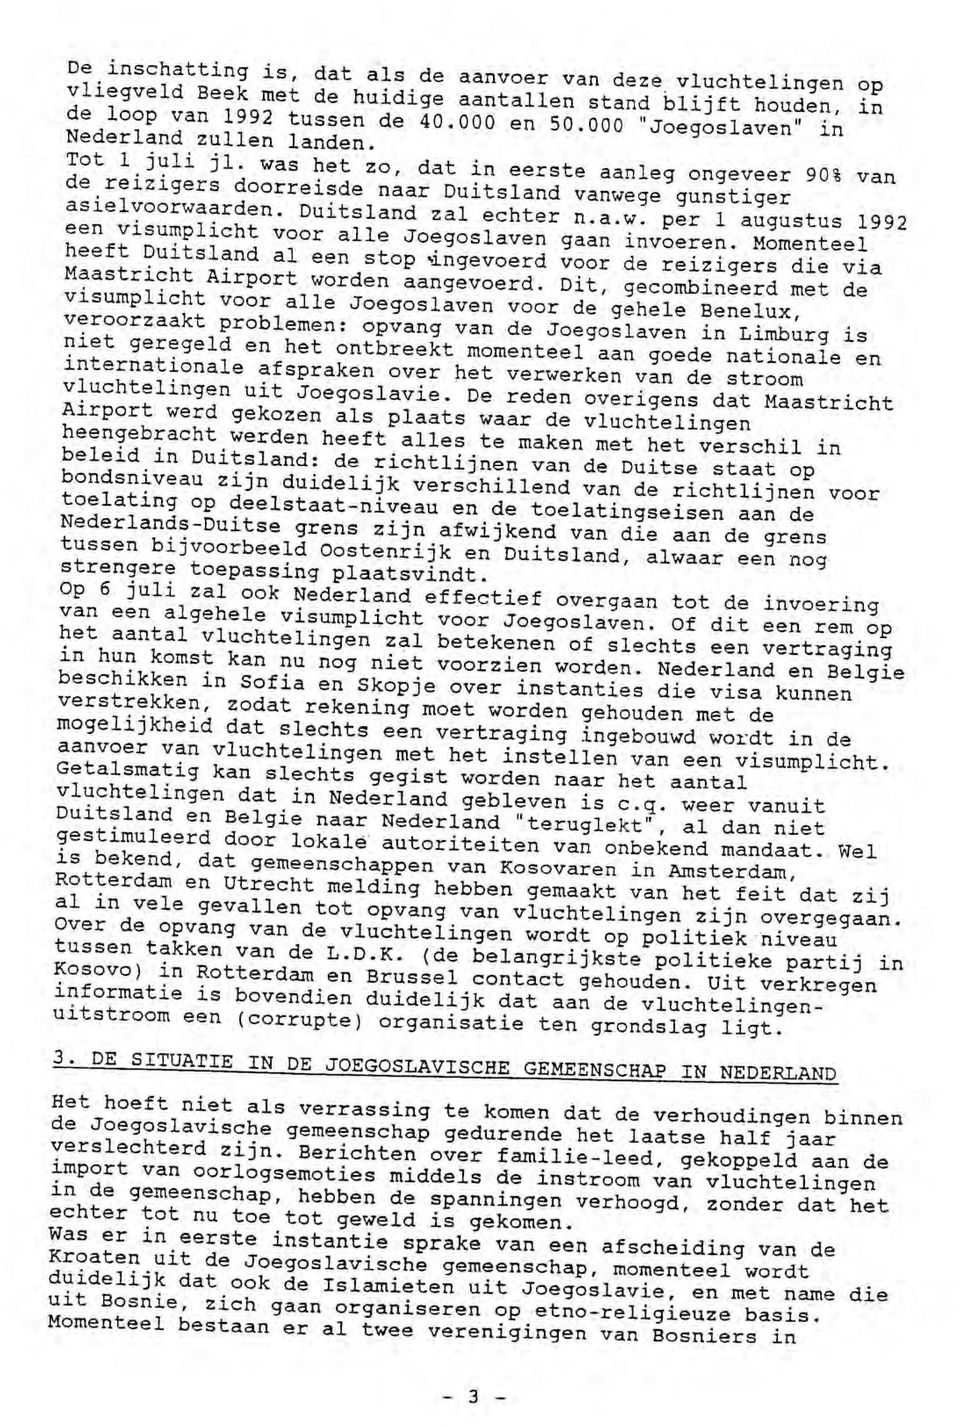 Duitsland zal echter n.a.w. per 1 augustus 1992 een visumplicht voor alle Joegoslaven gaan invoeren.